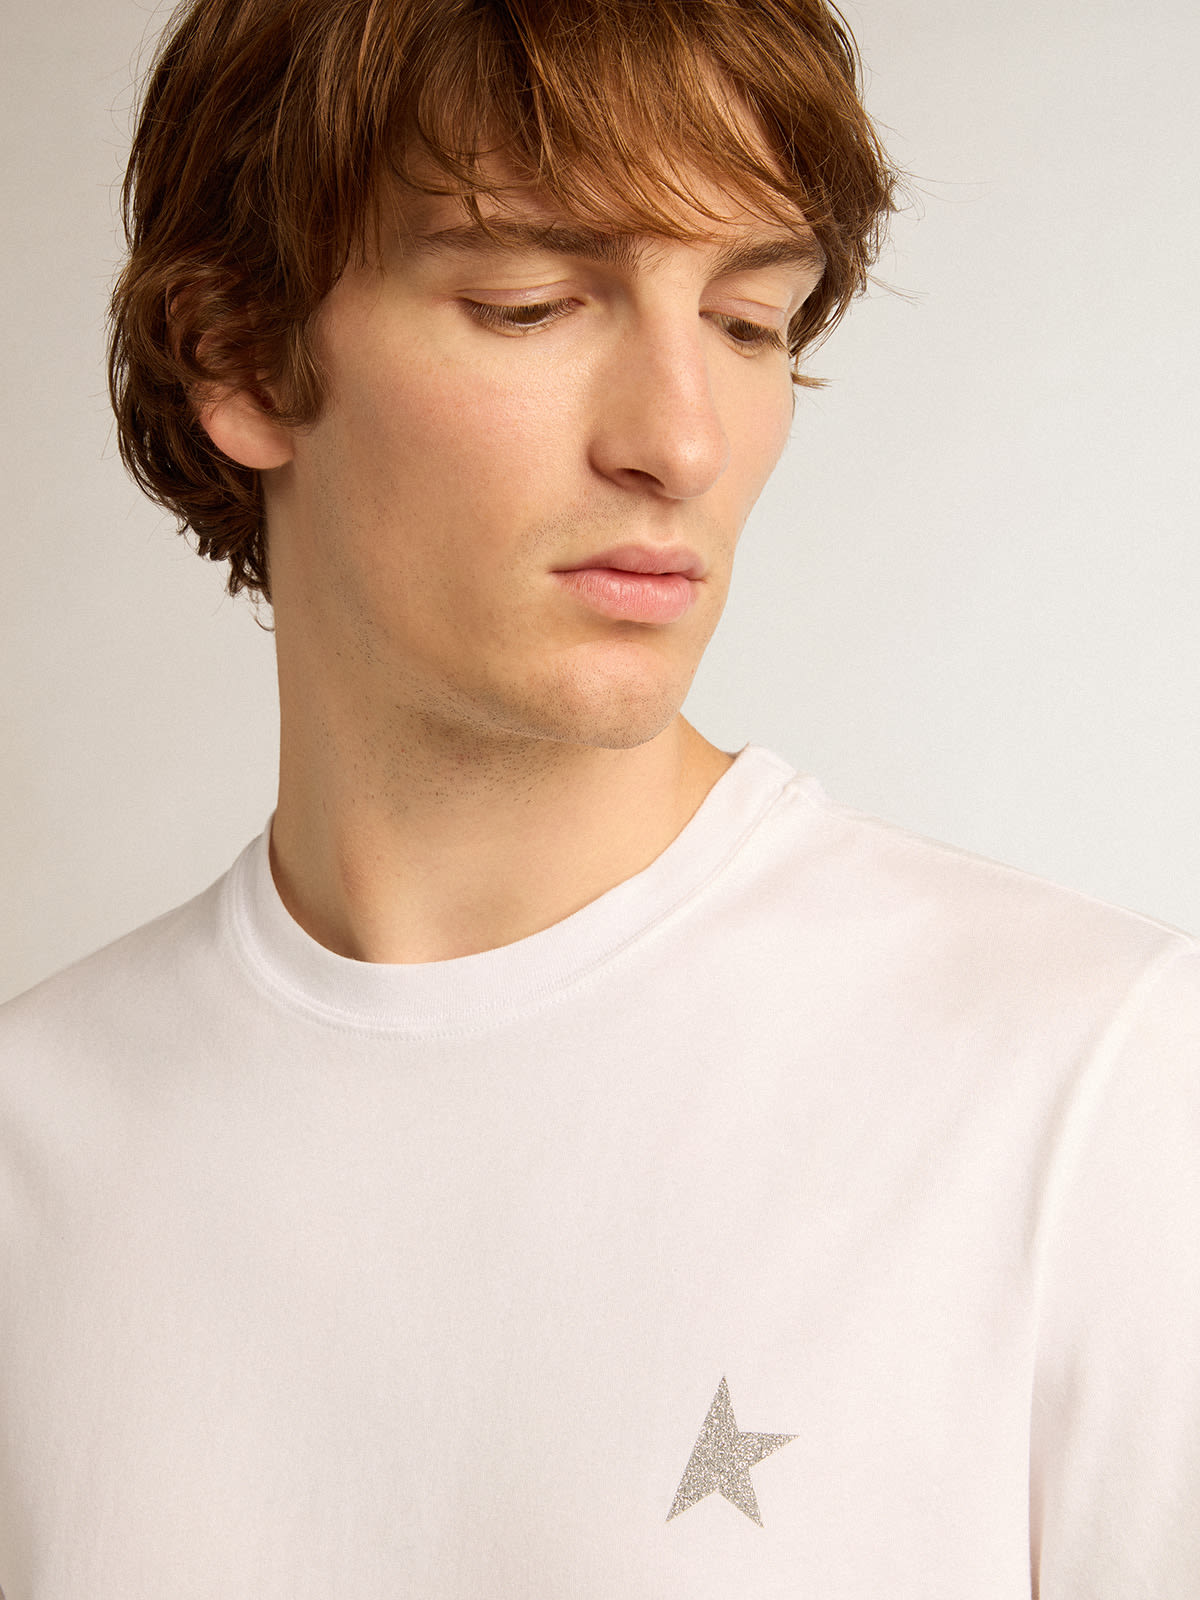 Golden Goose - T-shirt da uomo bianca con stella in glitter argento sul davanti in 